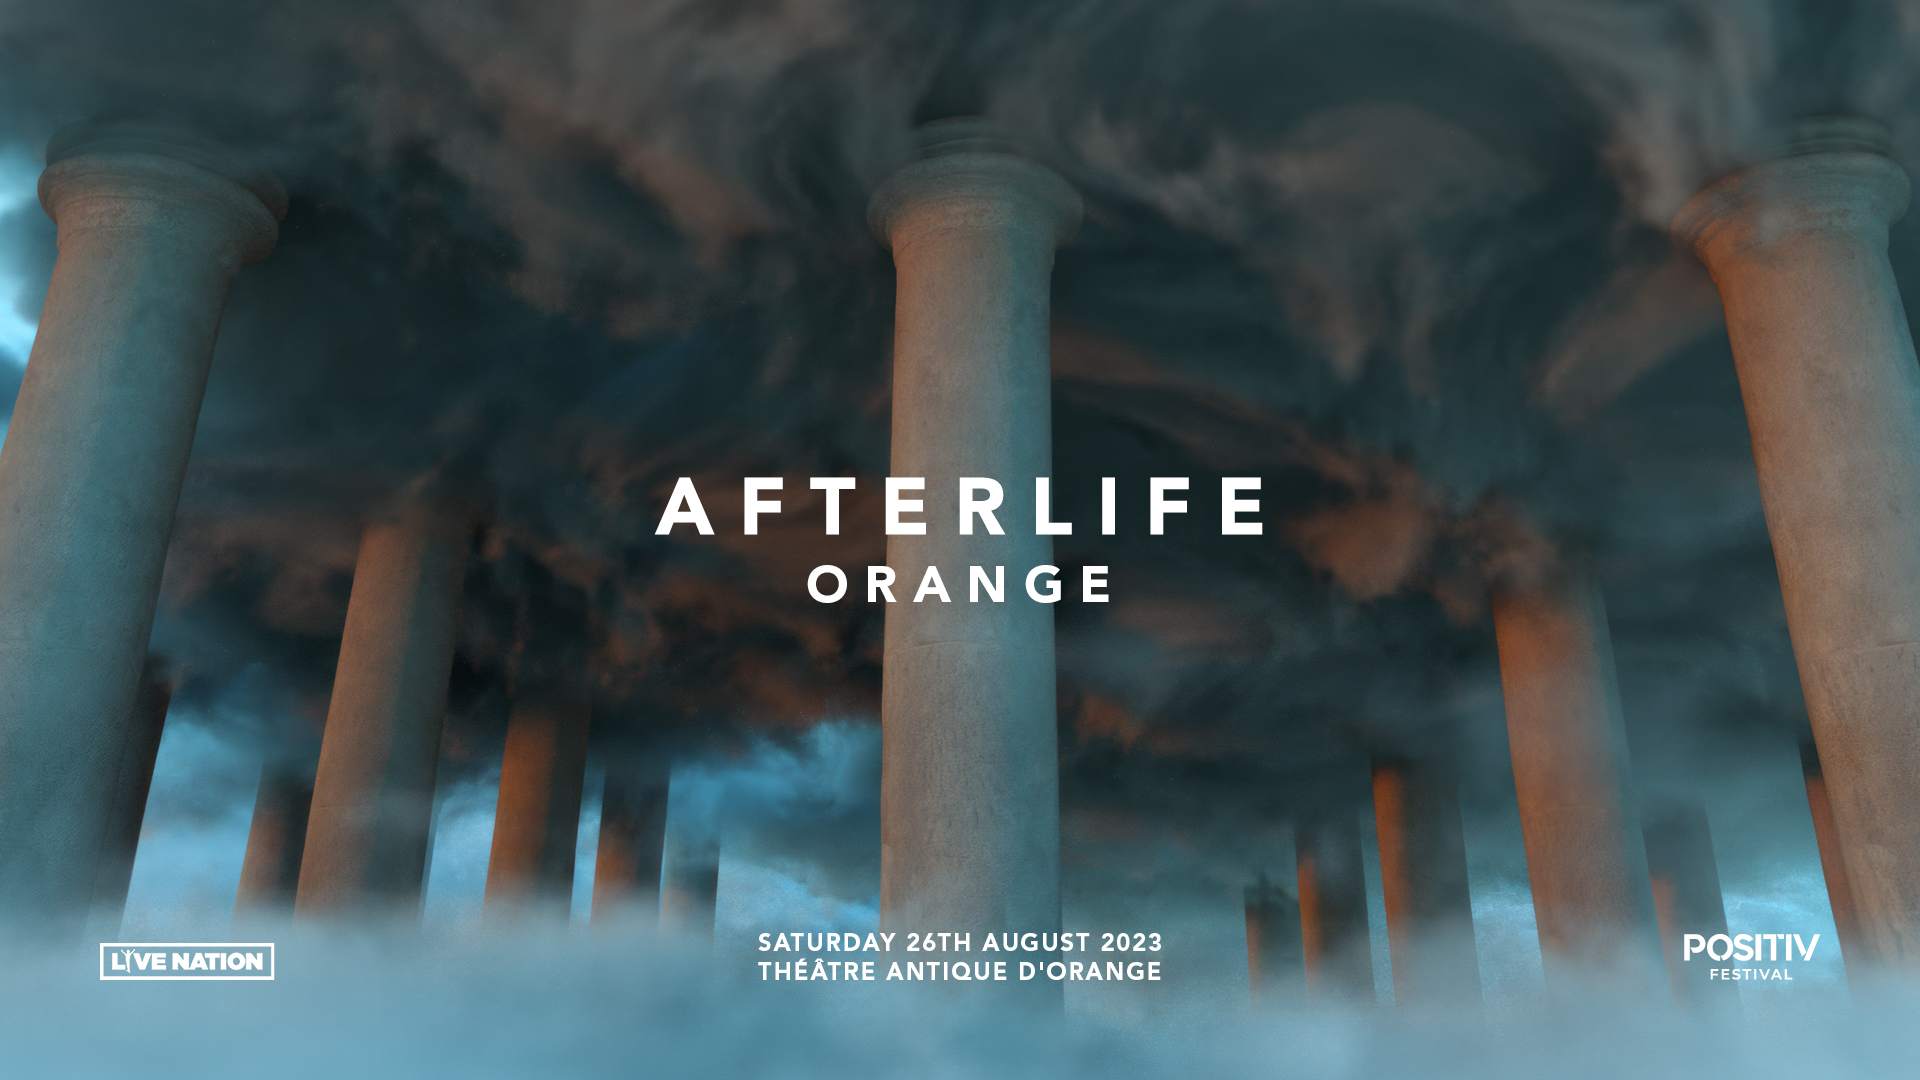 Afterlife Orange 2023 at le Théâtre Antique d'Orange, South East